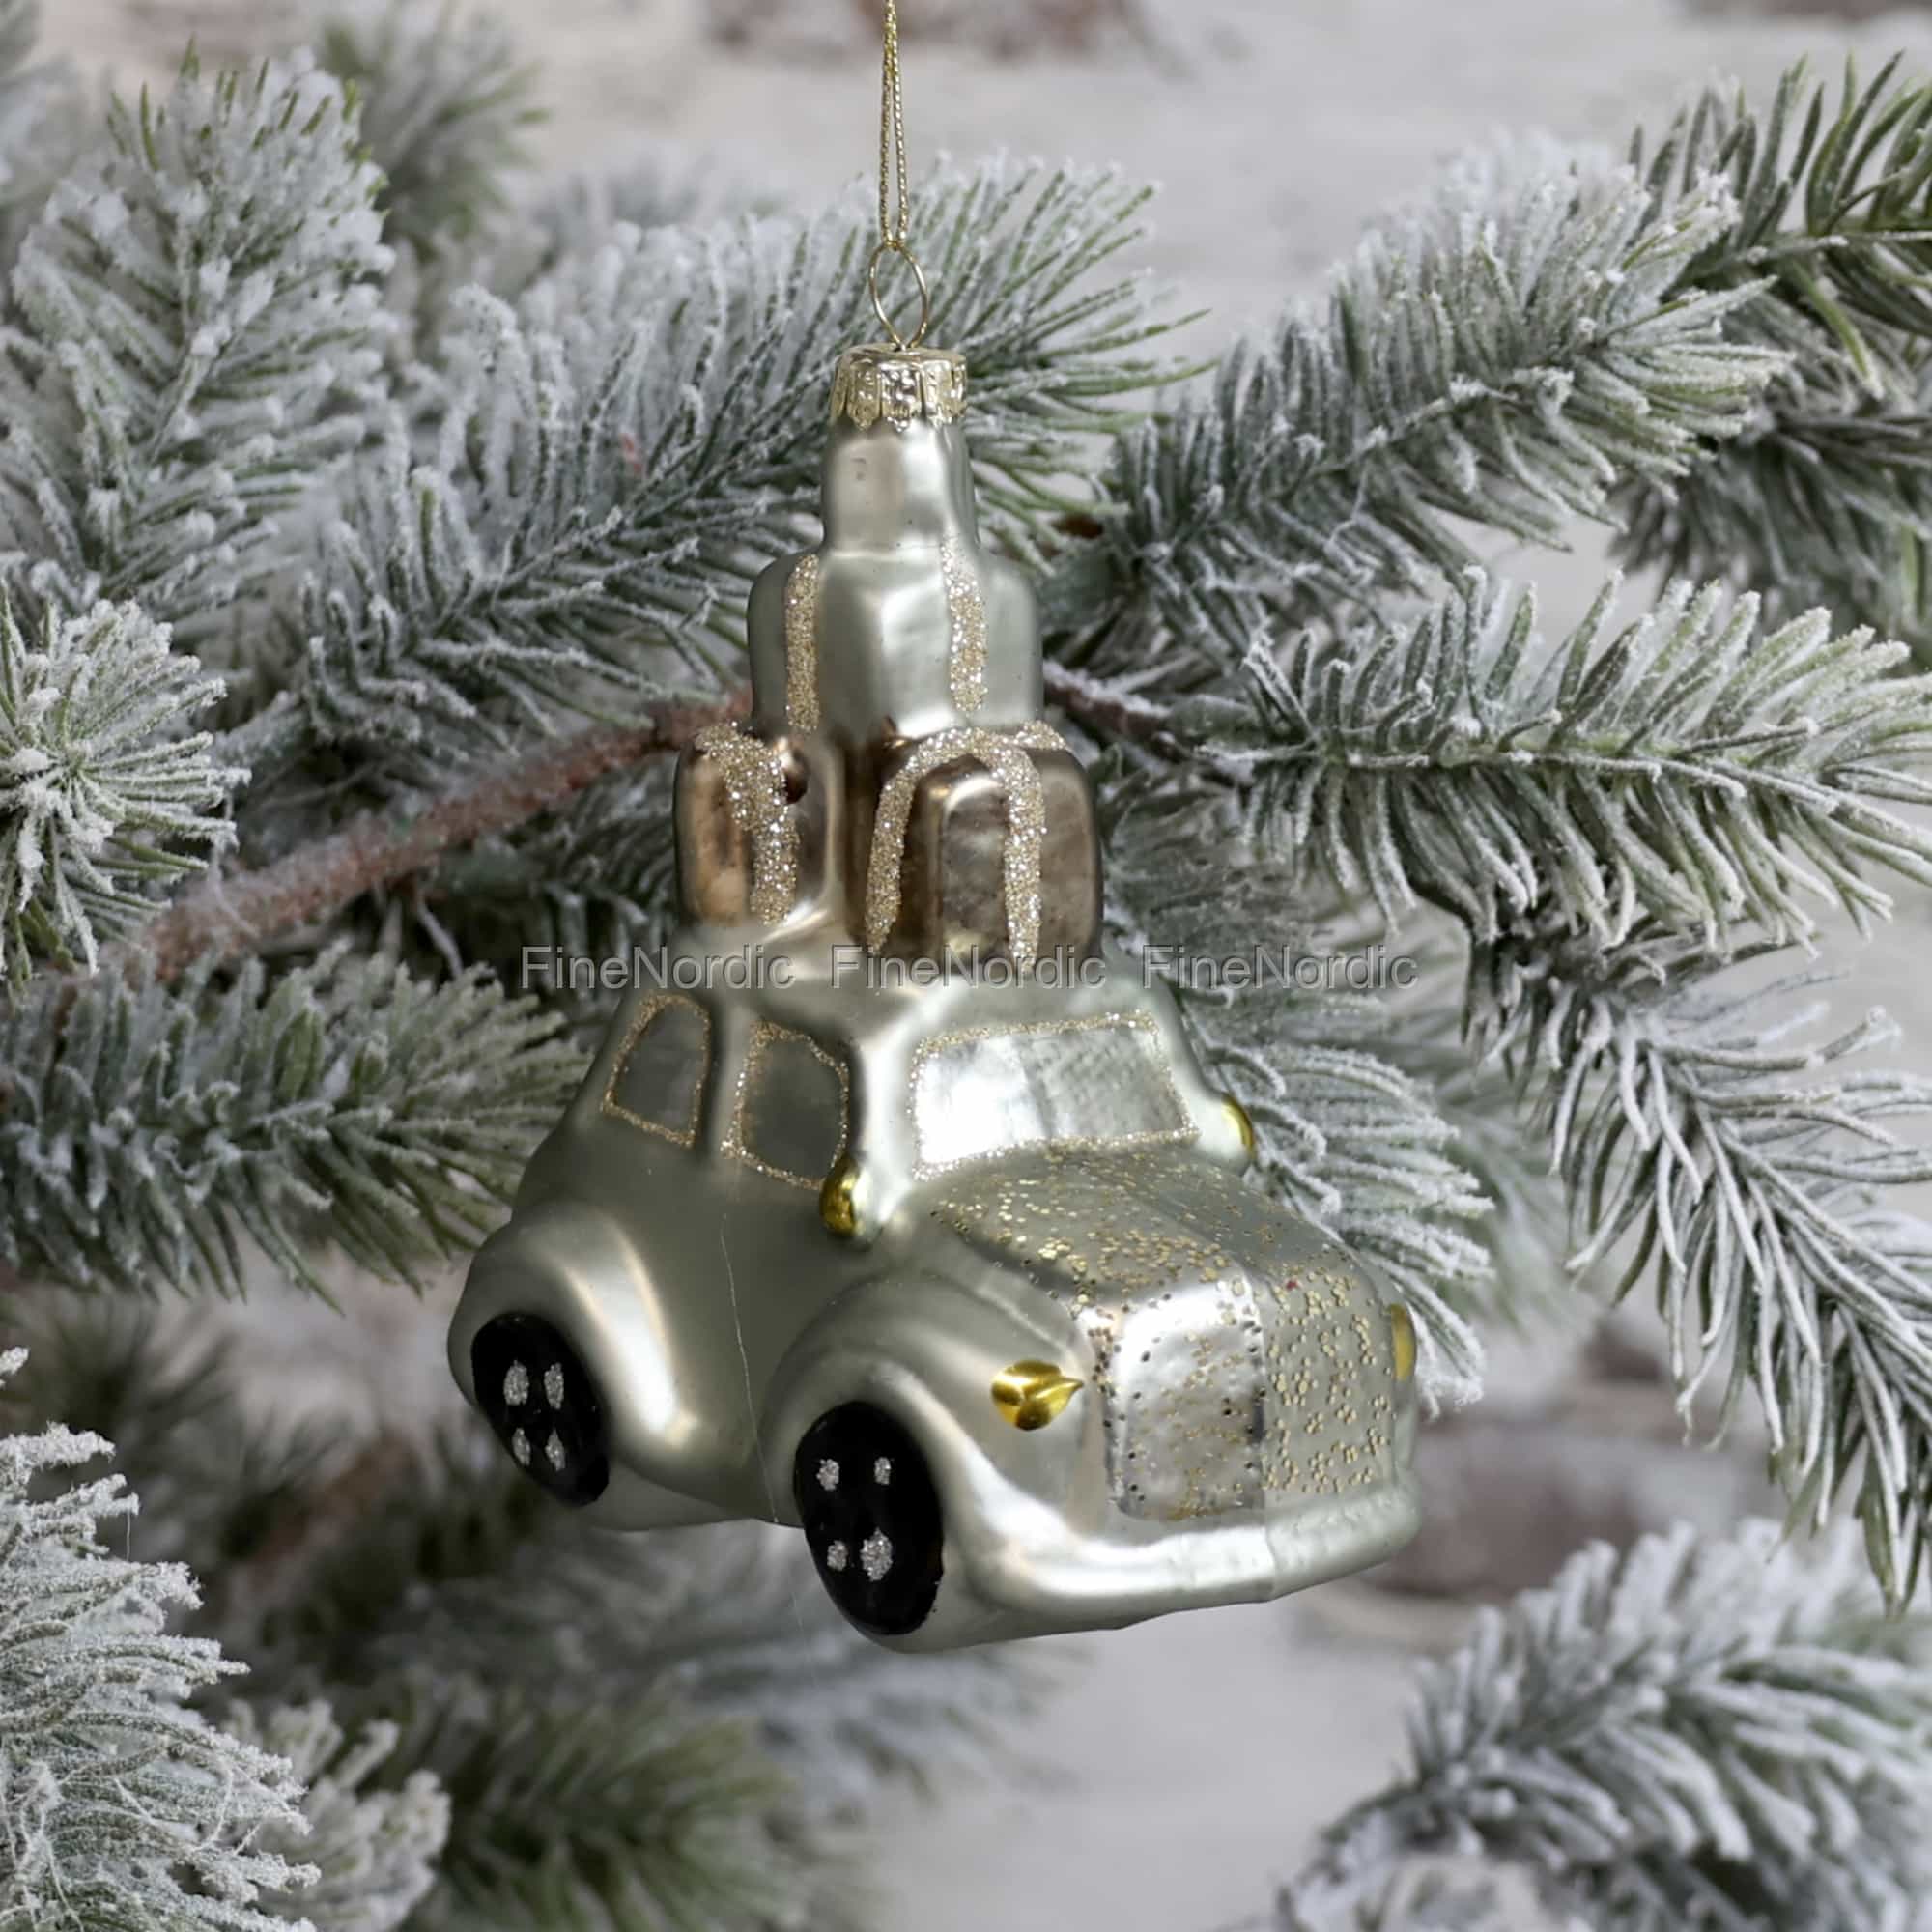 https://images.finenordic.de/image/58037-large-1620679858/chic-antique-weihnachtsschmuck-auto-mit-geschenke-zum-aufhaengen-antik-verte.jpg